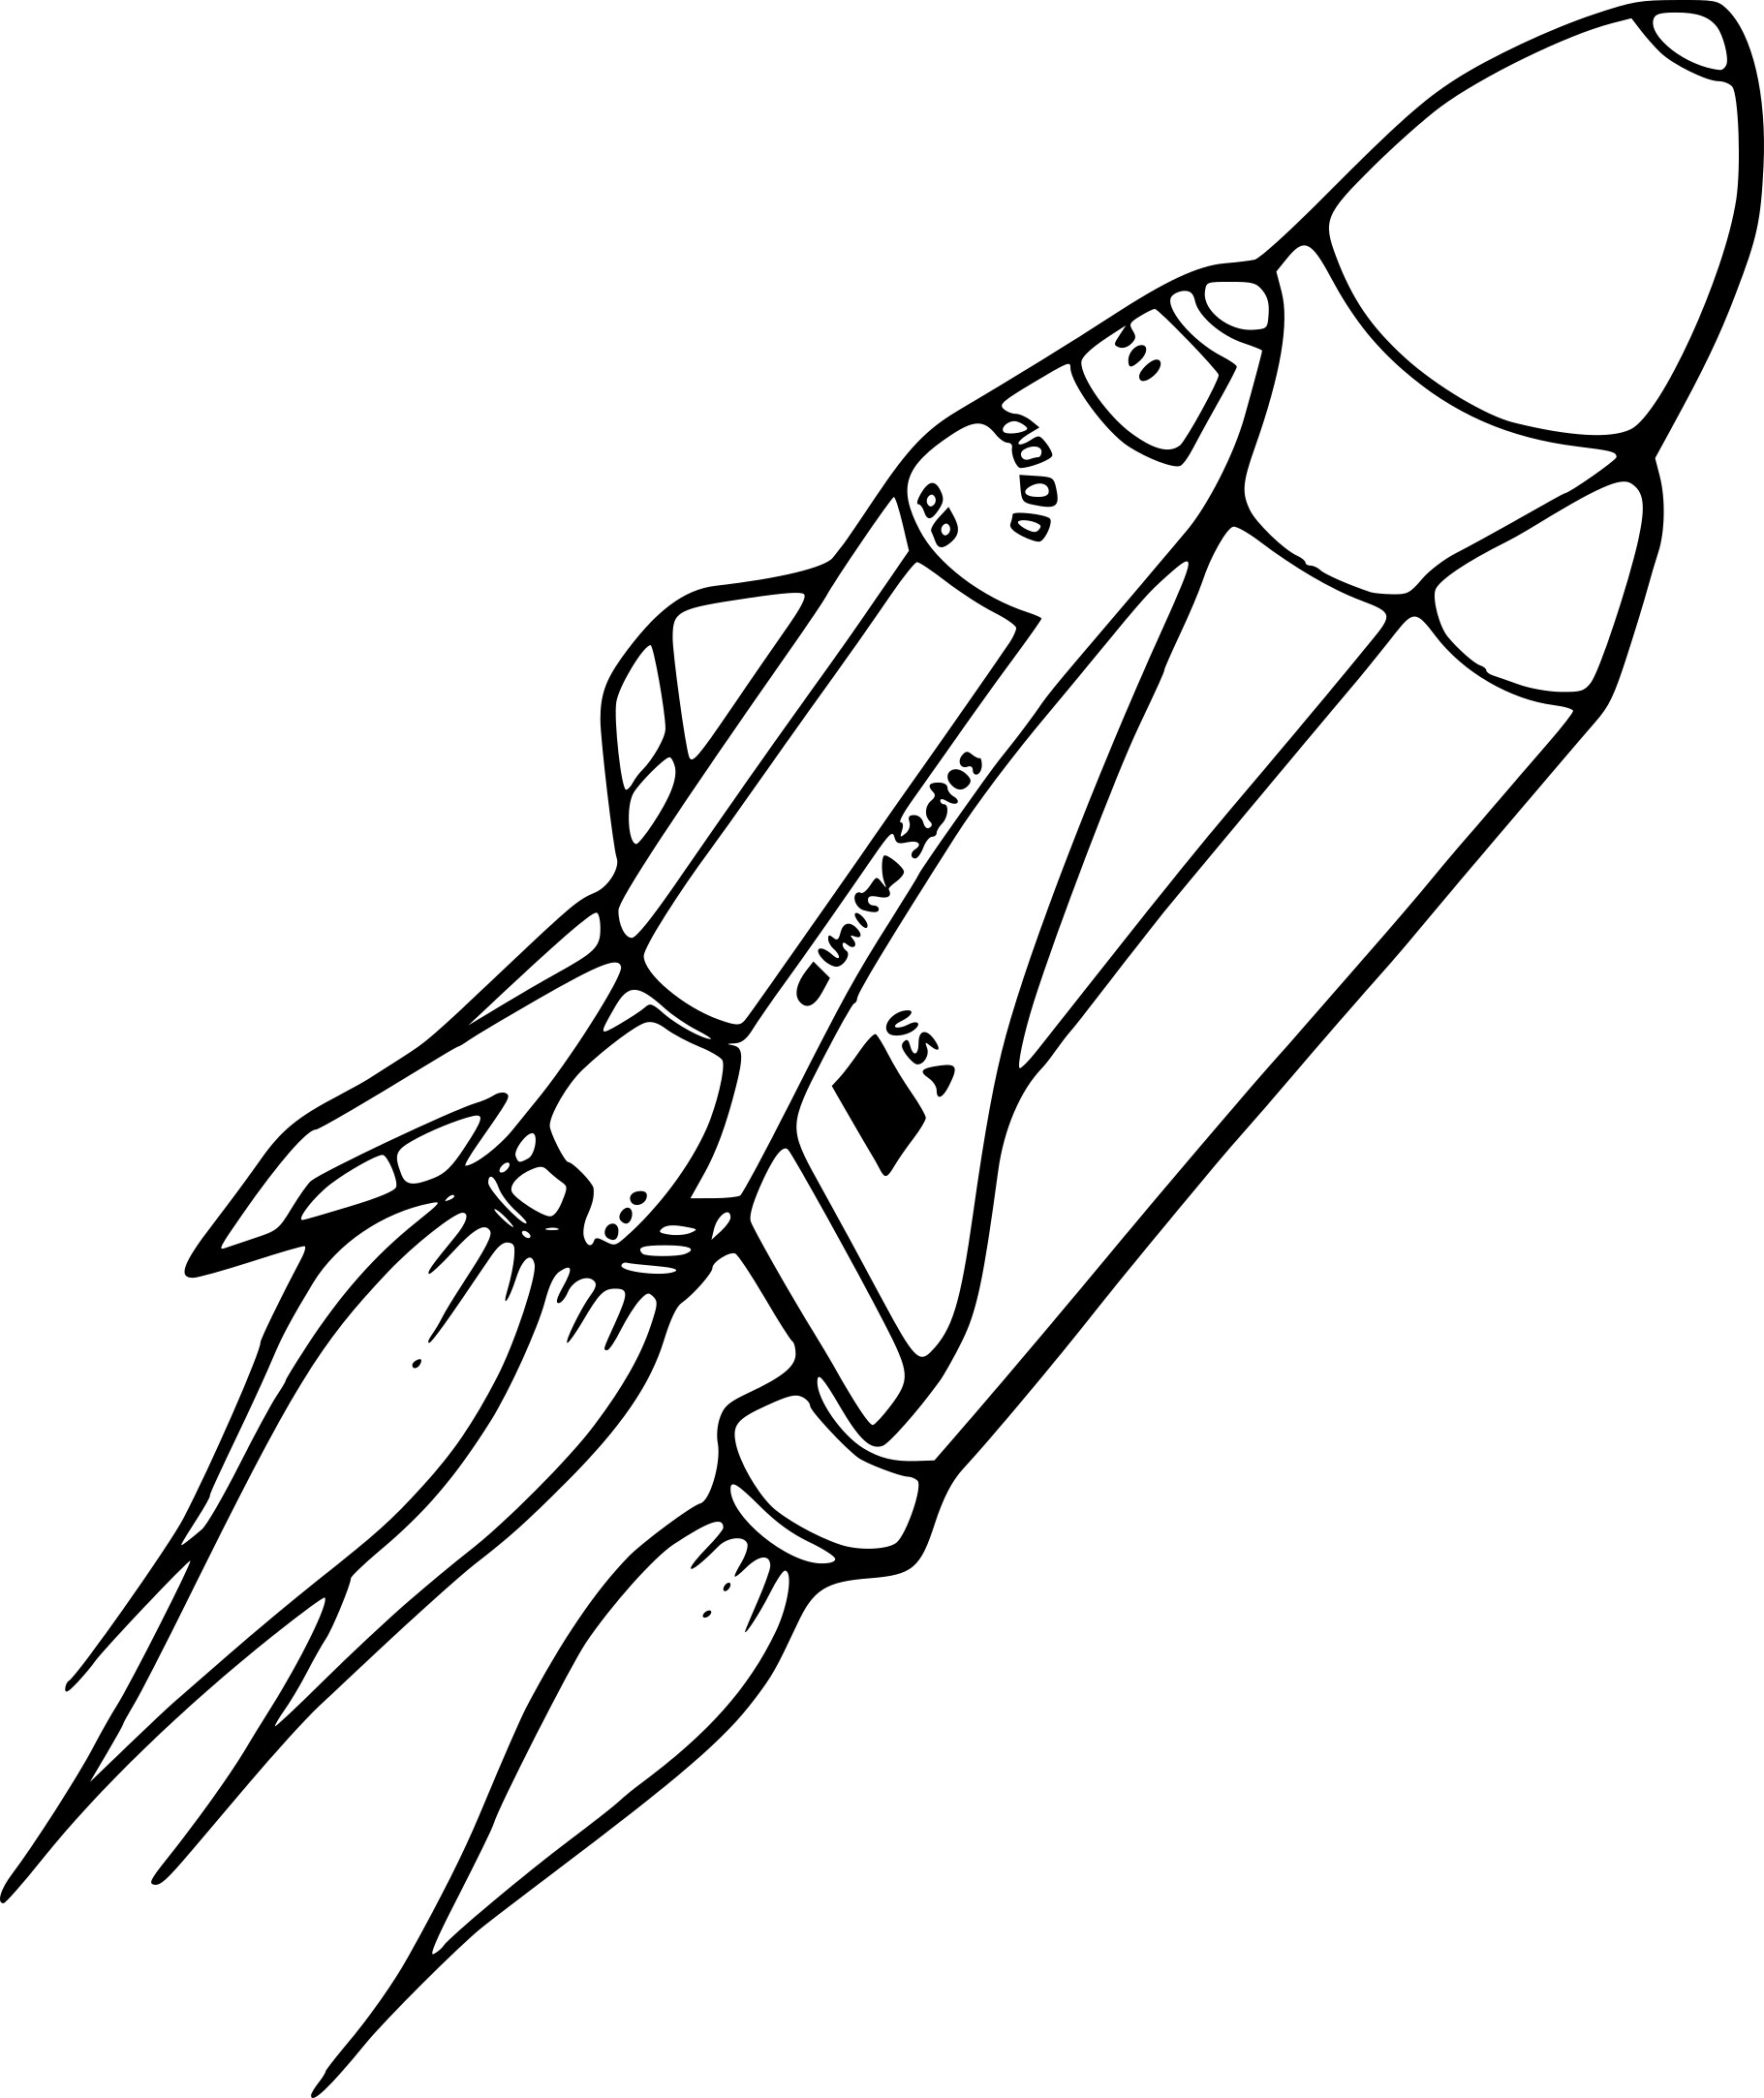 Coloriage Navette spatiale dessin gratuit à imprimer